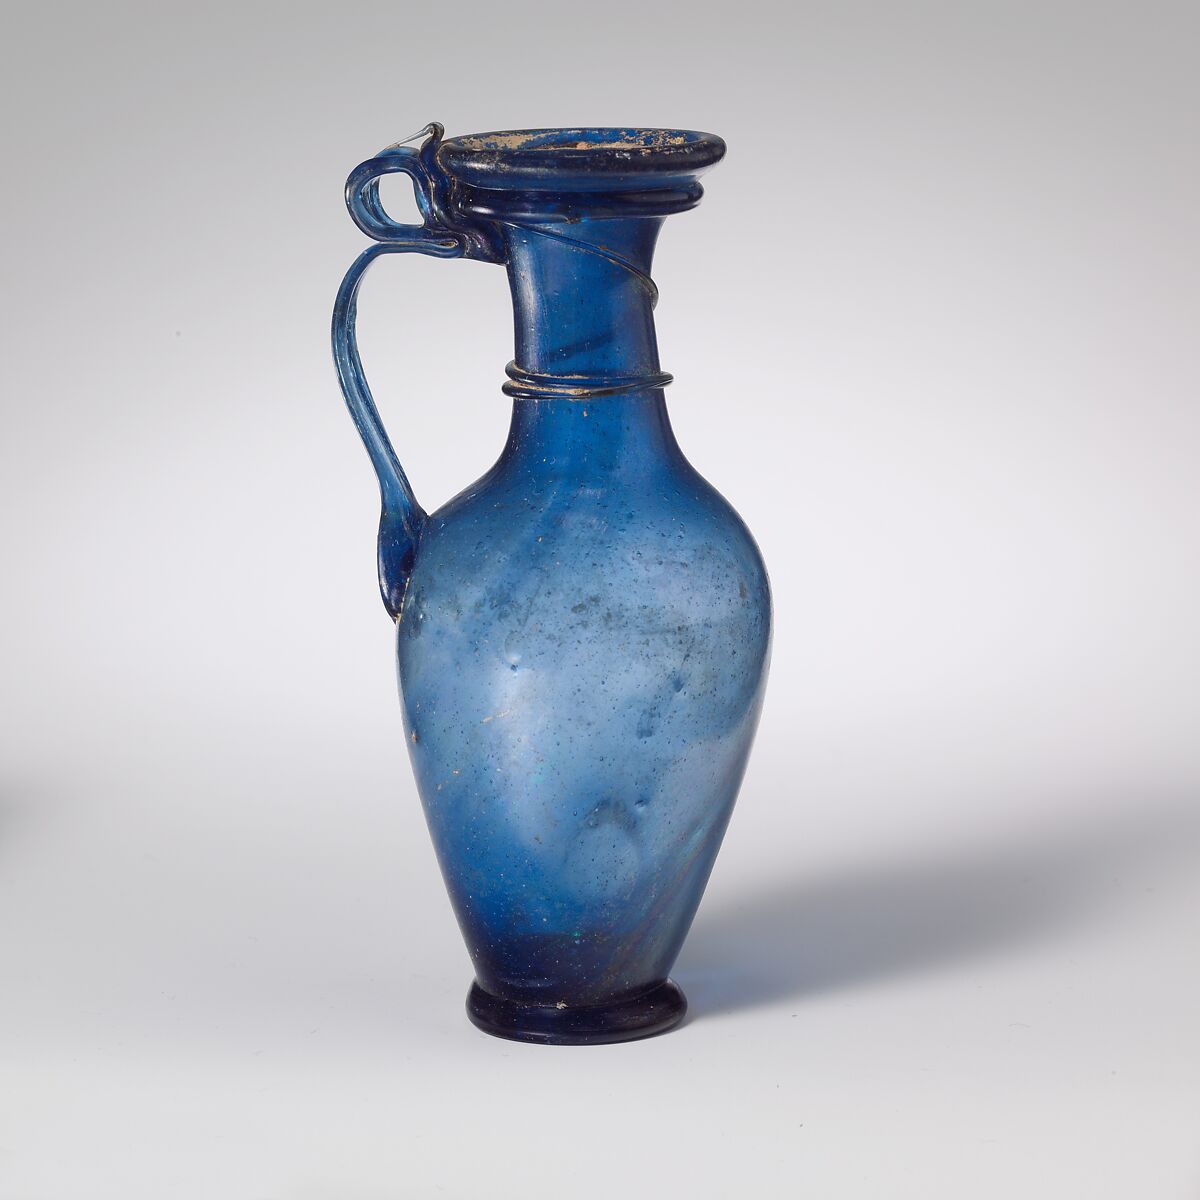 Glass jug, Glass, Roman, Rhenish 